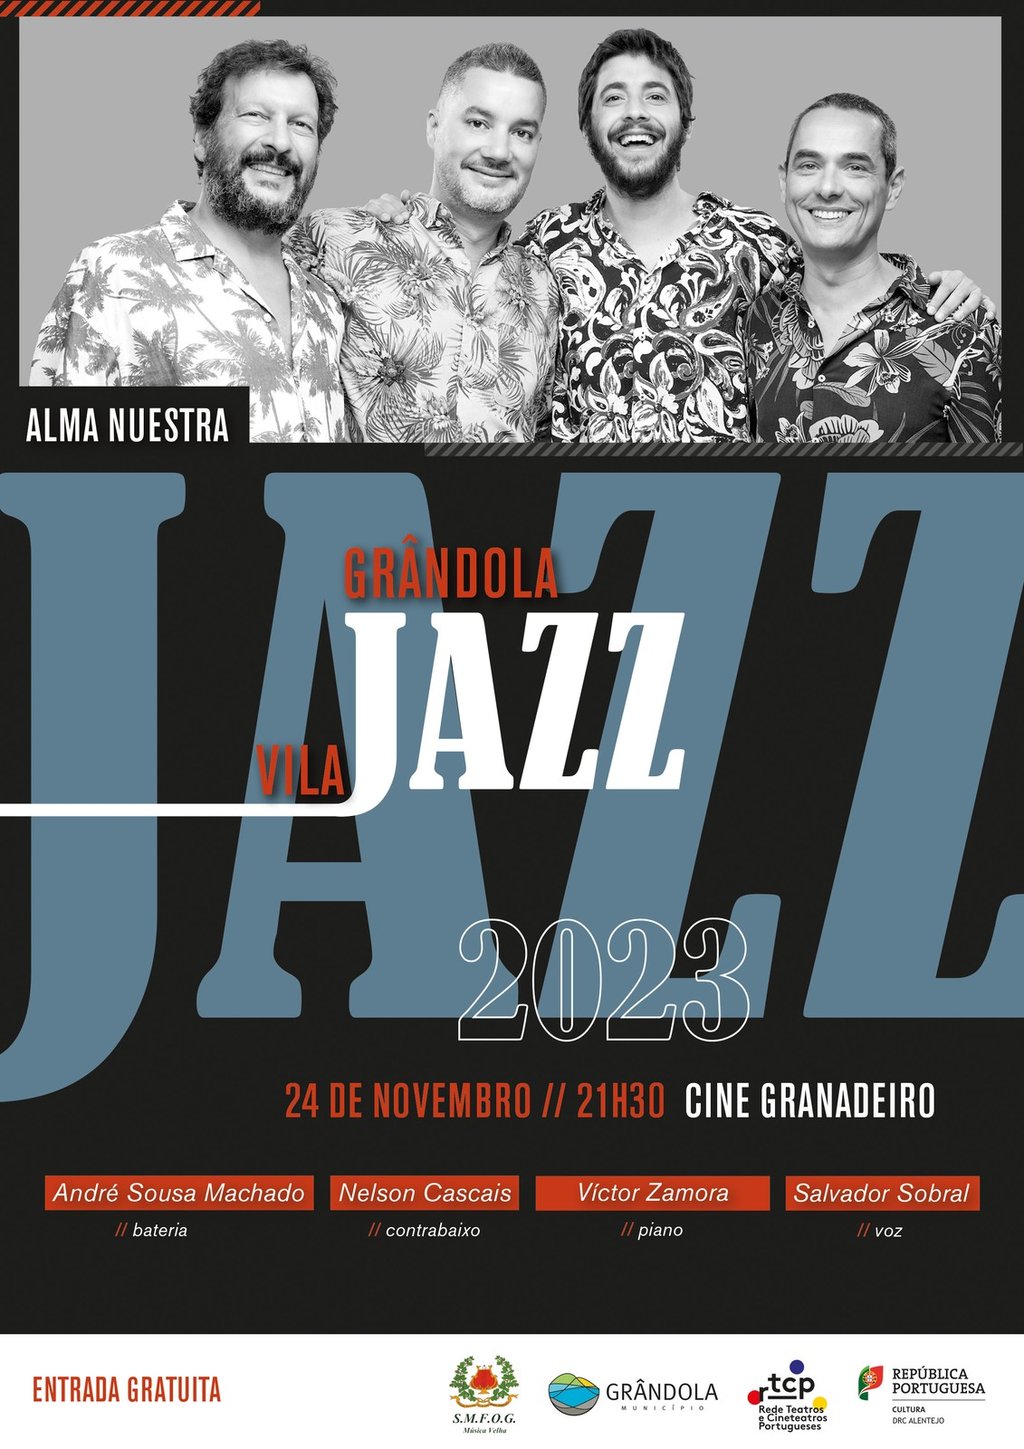 Grândola Vila Jazz | Alma Nuestra com Salvador Sobral